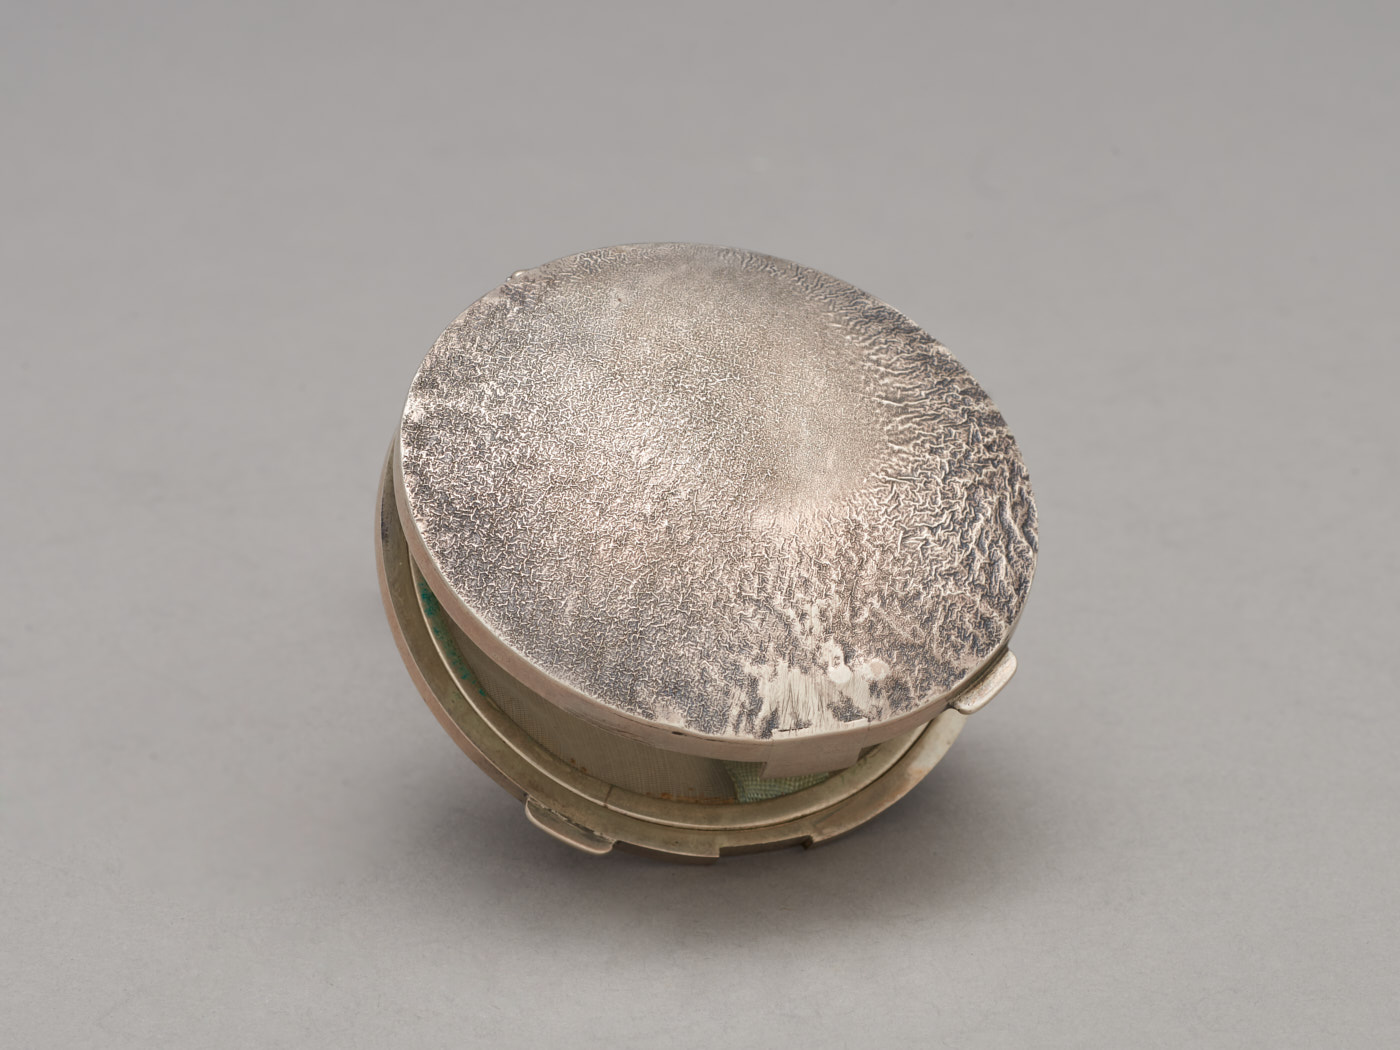 Zdjęcie srebrnej, okrągłej puderniczki. Na wieku nieregularna faktura, powstała poprzez rozgrzanie i stopienie wierzchniej warstwy metalu.